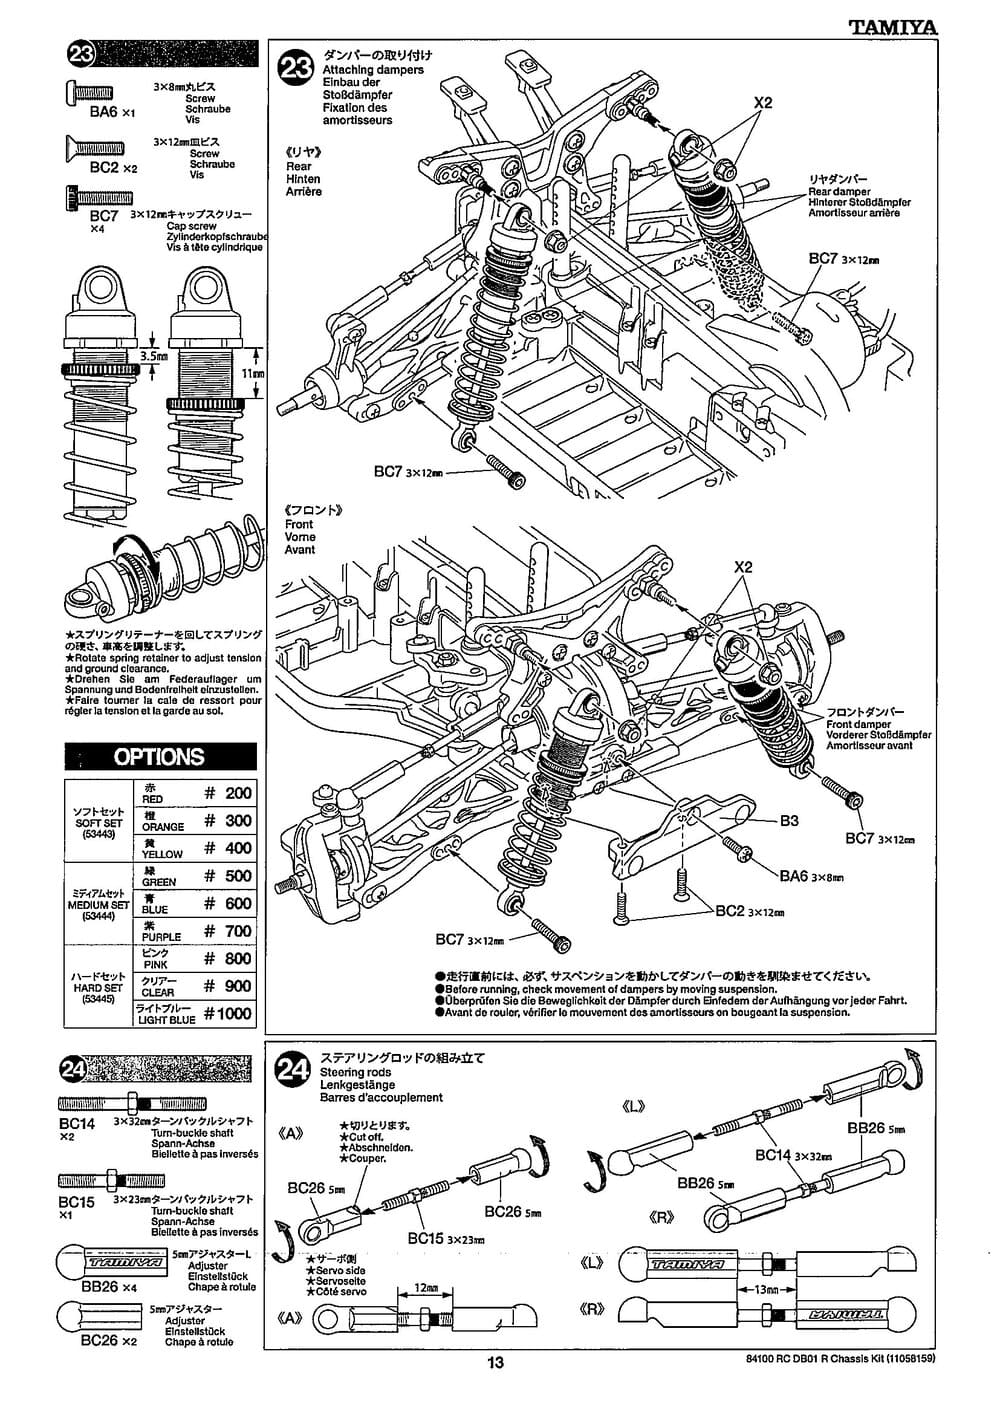 Tamiya - DB-01R Chassis - Manual - Page 13